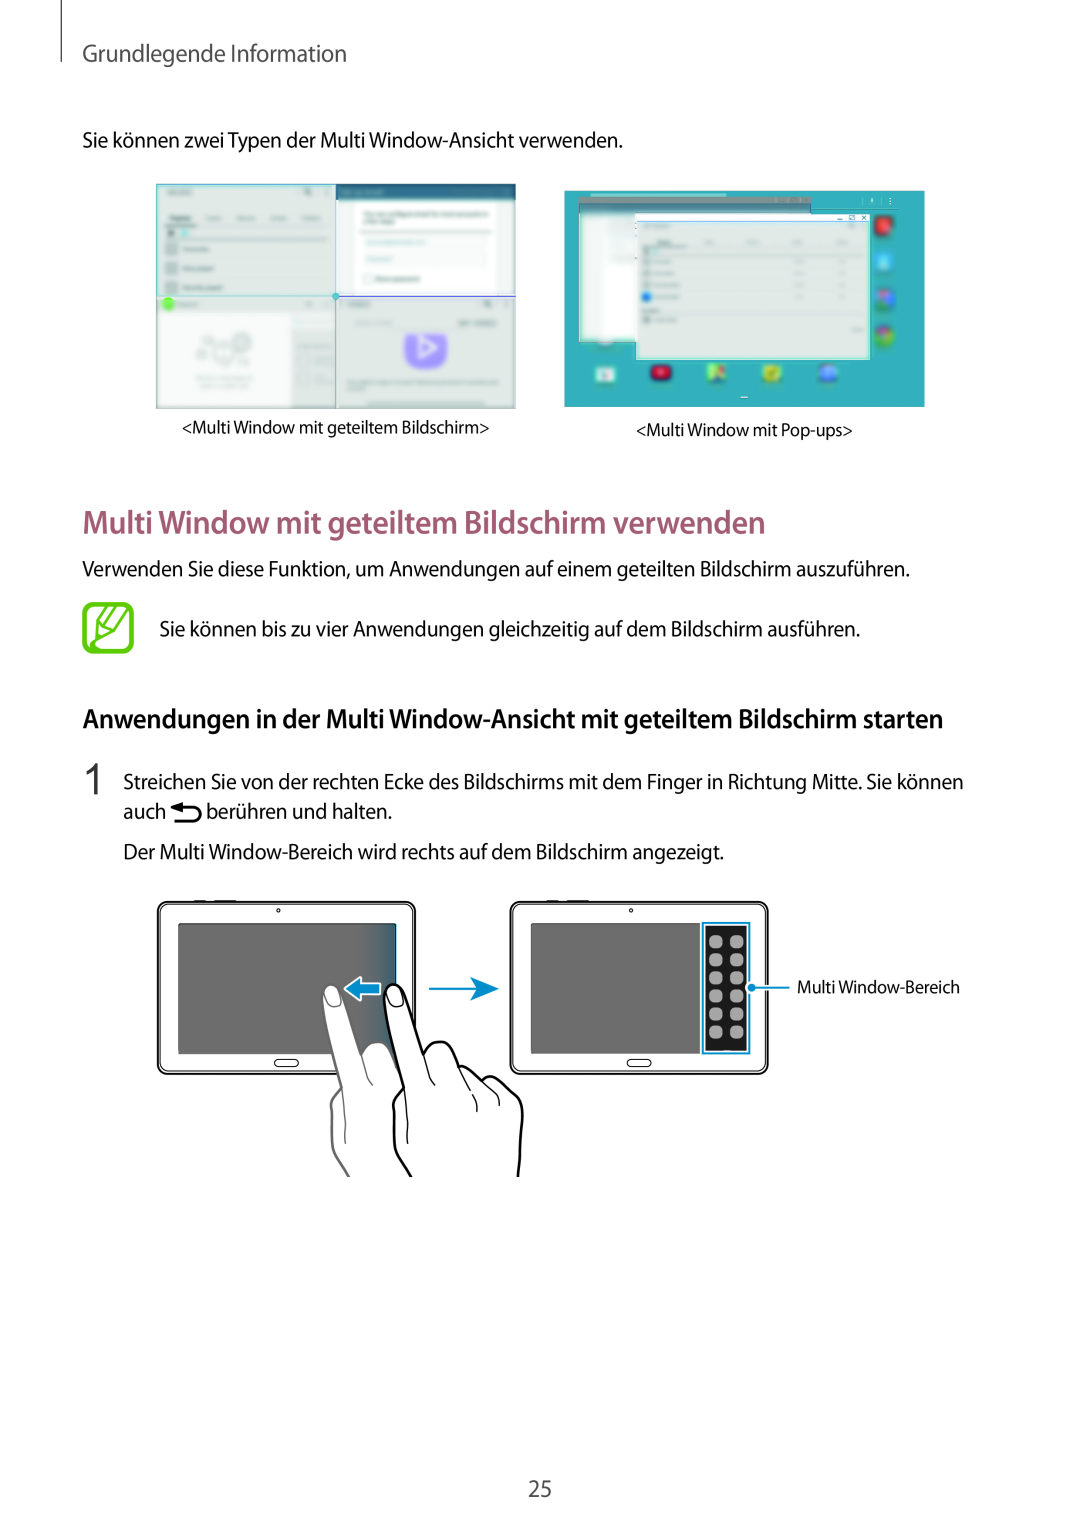 Samsung SM-P9000ZWAXEF, SM-P9000ZWAATO manual Multi Window mit geteiltem Bildschirm verwenden, Grundlegende Information 